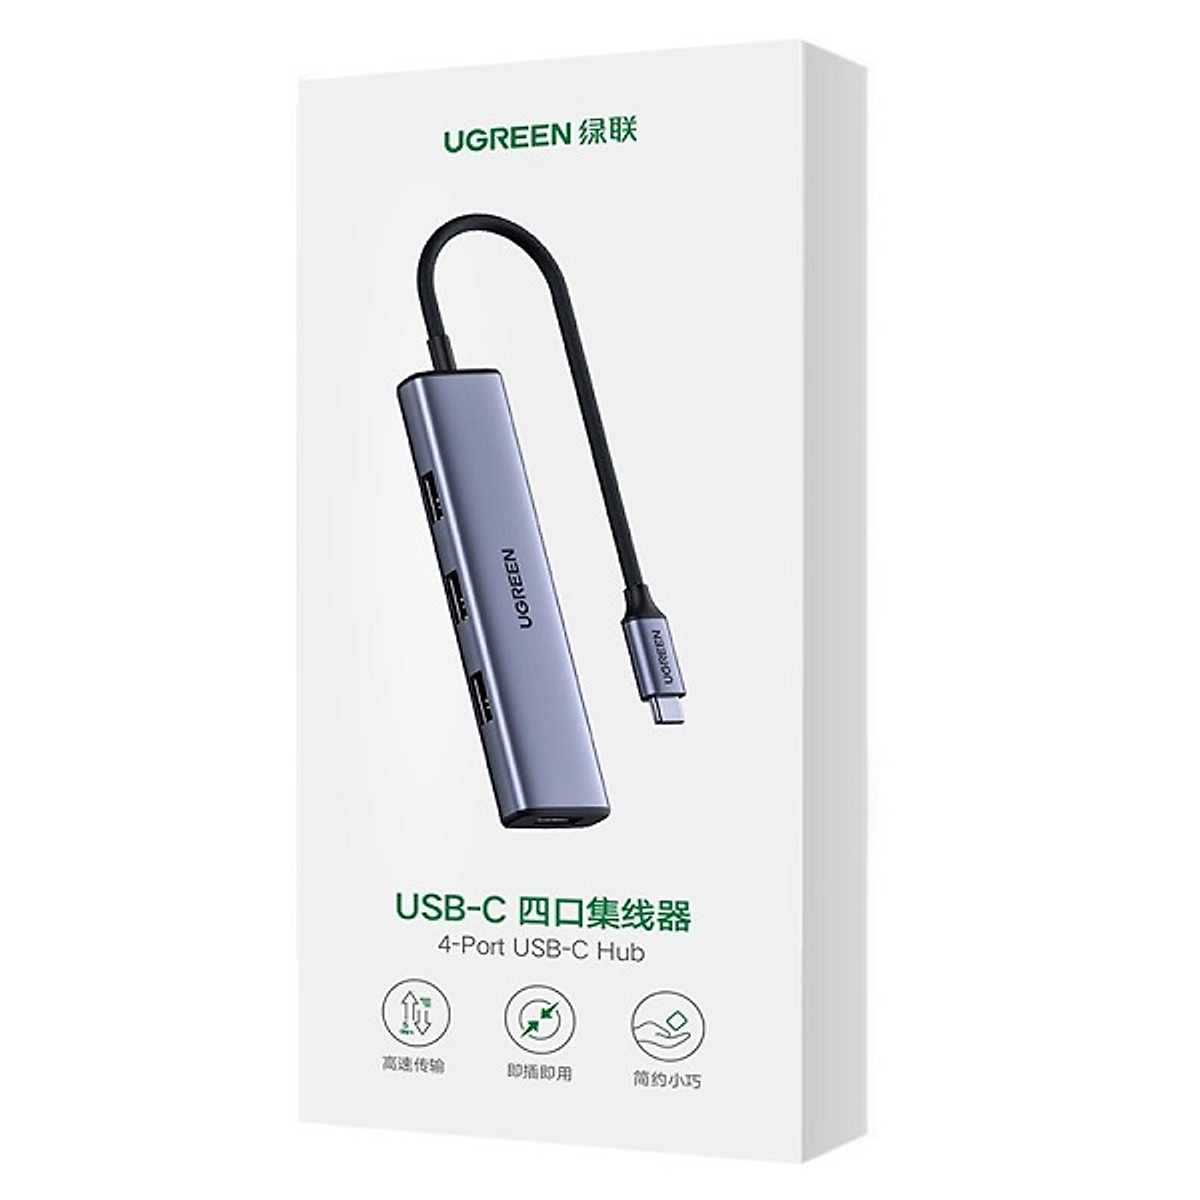 HUB USB TYPE-C SANG 4 CỔNG USB 3.0 UGREEN 70336, CÓ CỔNG TRỢ NGUỒN .